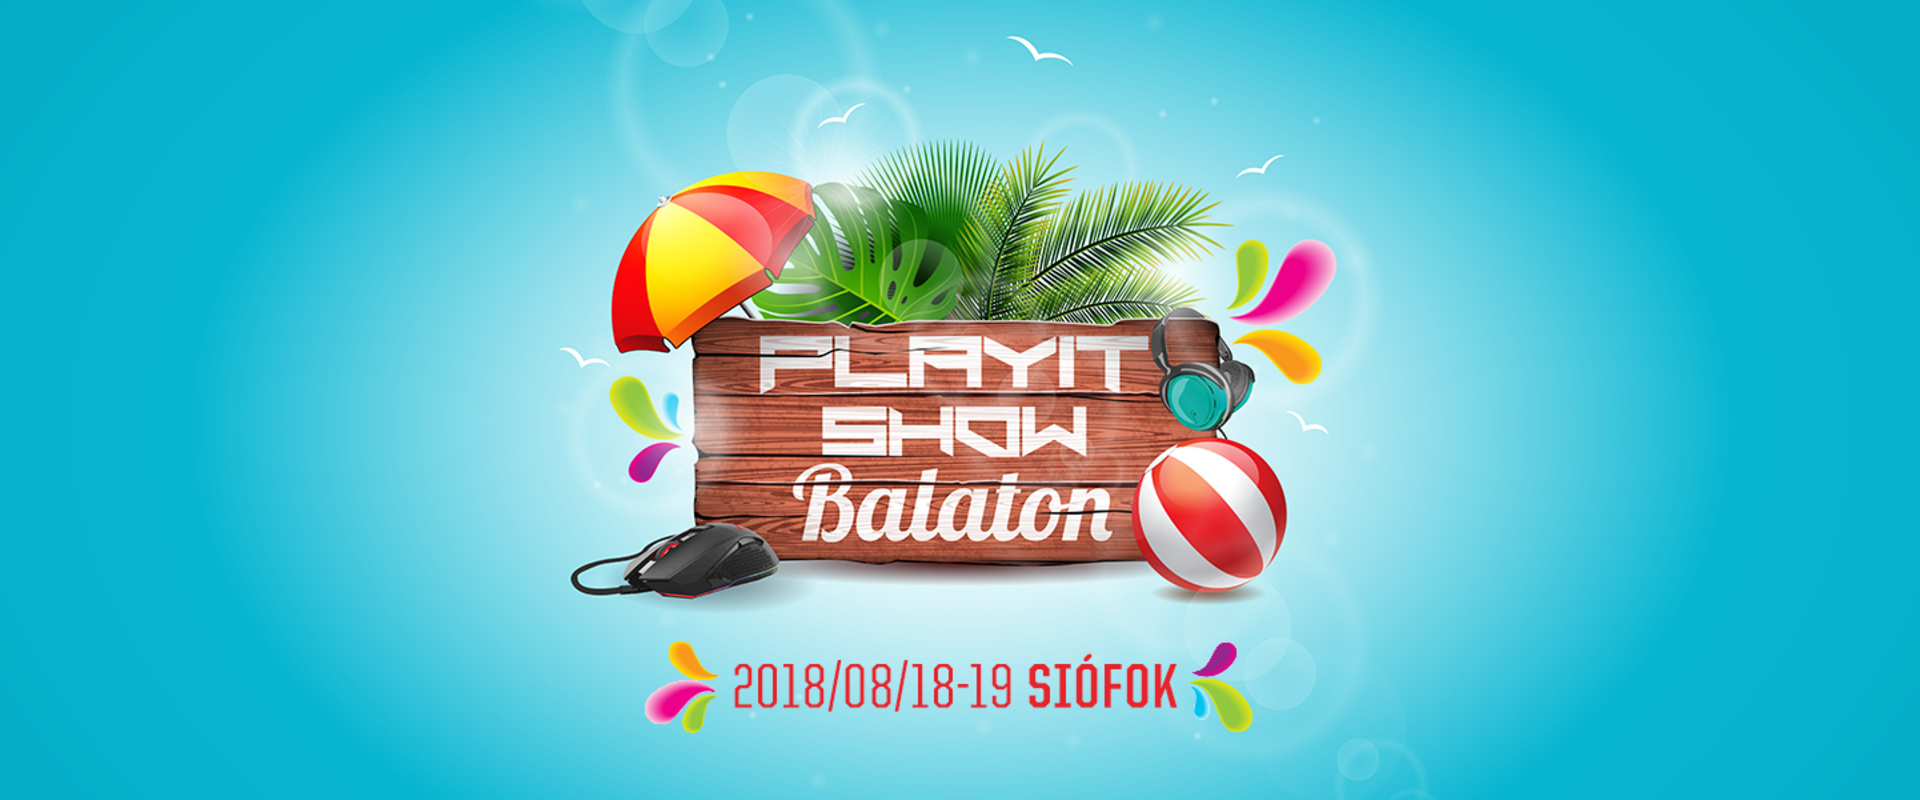 Programajánló: Gaming fesztivál Siófokon, indul a PlayIT Balaton!